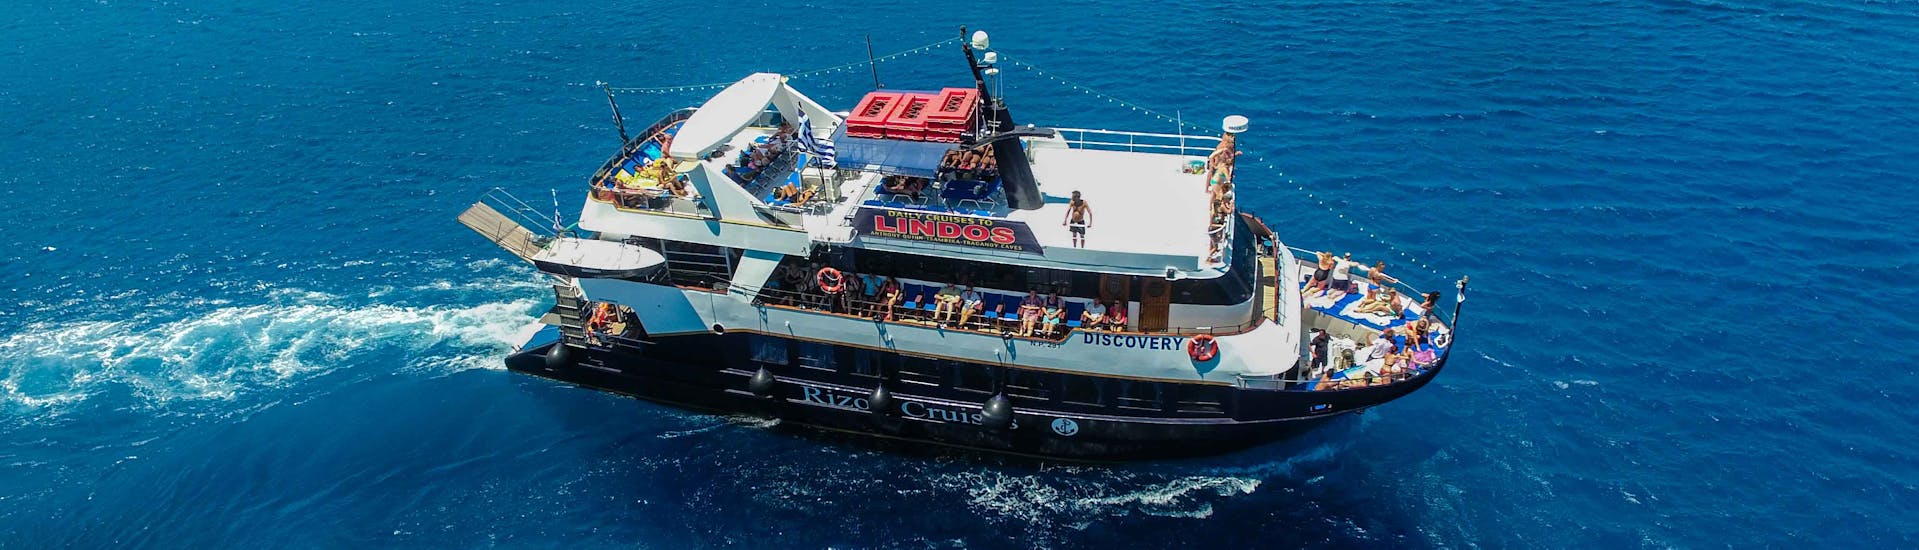 Le bateau "Discovery" navigue sur la Méditerranée lors de la Balade en bateau d'une journée à l'île de Symi avec Baignade avec Rizos Cruises Rhodes.